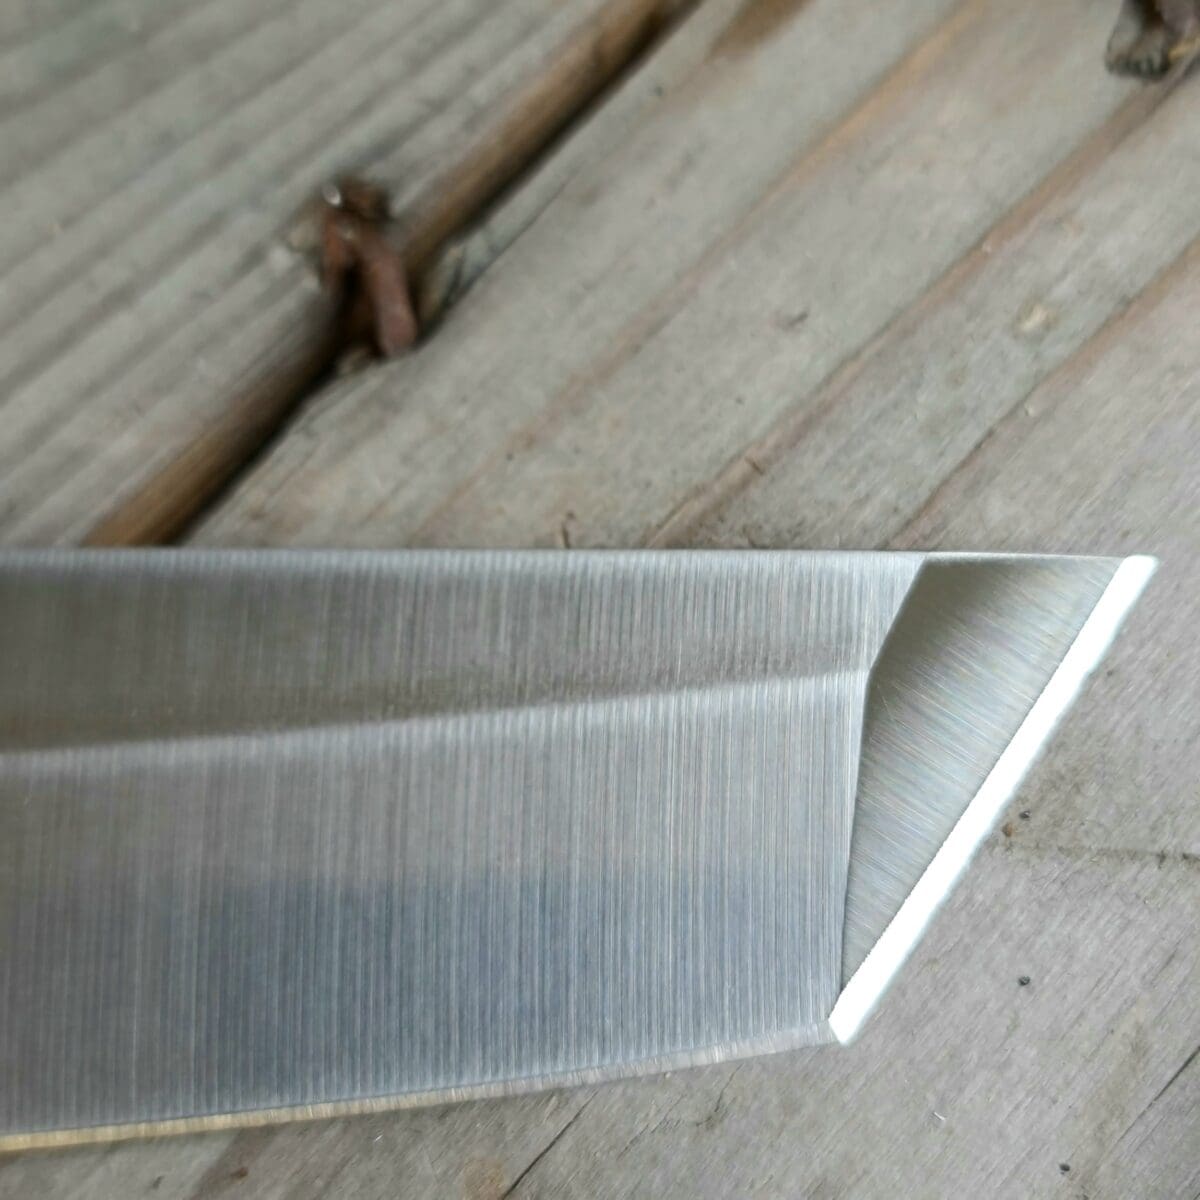 Red Spirit "Tanto" - Universalkniv av Tyskt rostfritt kolstål - proffskniv från F.Dick - grundat 1778. Universalkniv som kan spela många roller i köket. Butcher knife, Slaktkniv, Delningskniv från anrika F.Dick som grundades redan 1778. Knivtypen påminner om en japansk självmordskniv för misslyckade samurajer. Utformningen med den vässade och snedskurna avslutningen av eggen öppnar upp för att kunna skära mycket exakta snitt från udda vinklar. Bladet är mycket stabilt och viker inte även vid hårdare tag. Knivarna från F.Dick i serien Red Spirit används professionellt av både styckare och slaktare. Fokus på användarvänlighet, enkelhet att rengöra och ergonomi ligger i fokus. Skaftet ger ett bra grepp och är enkelt att rengöra. Handtaget passar både höger- och vänsterhänta. Red Spirit Tanto är gjord för att kunna användas professionellt. Både skaft och blad är helt fritt från mikroporer vilket gör att både blad och handtag går att får helt rent och desinficerat. Made in Germany av tyskt kvalitetsstål med följande egenskaper: Kolstål med blandning X50CrMoV15 Hårdhet 56° HRC vilket är ett relativt mjukt stål - något som gör att du själv enkelt kan hålla din kniv vass. Total längd: 34cm Längd på bladet: 22 cm Längd på skaftet: 12 cm